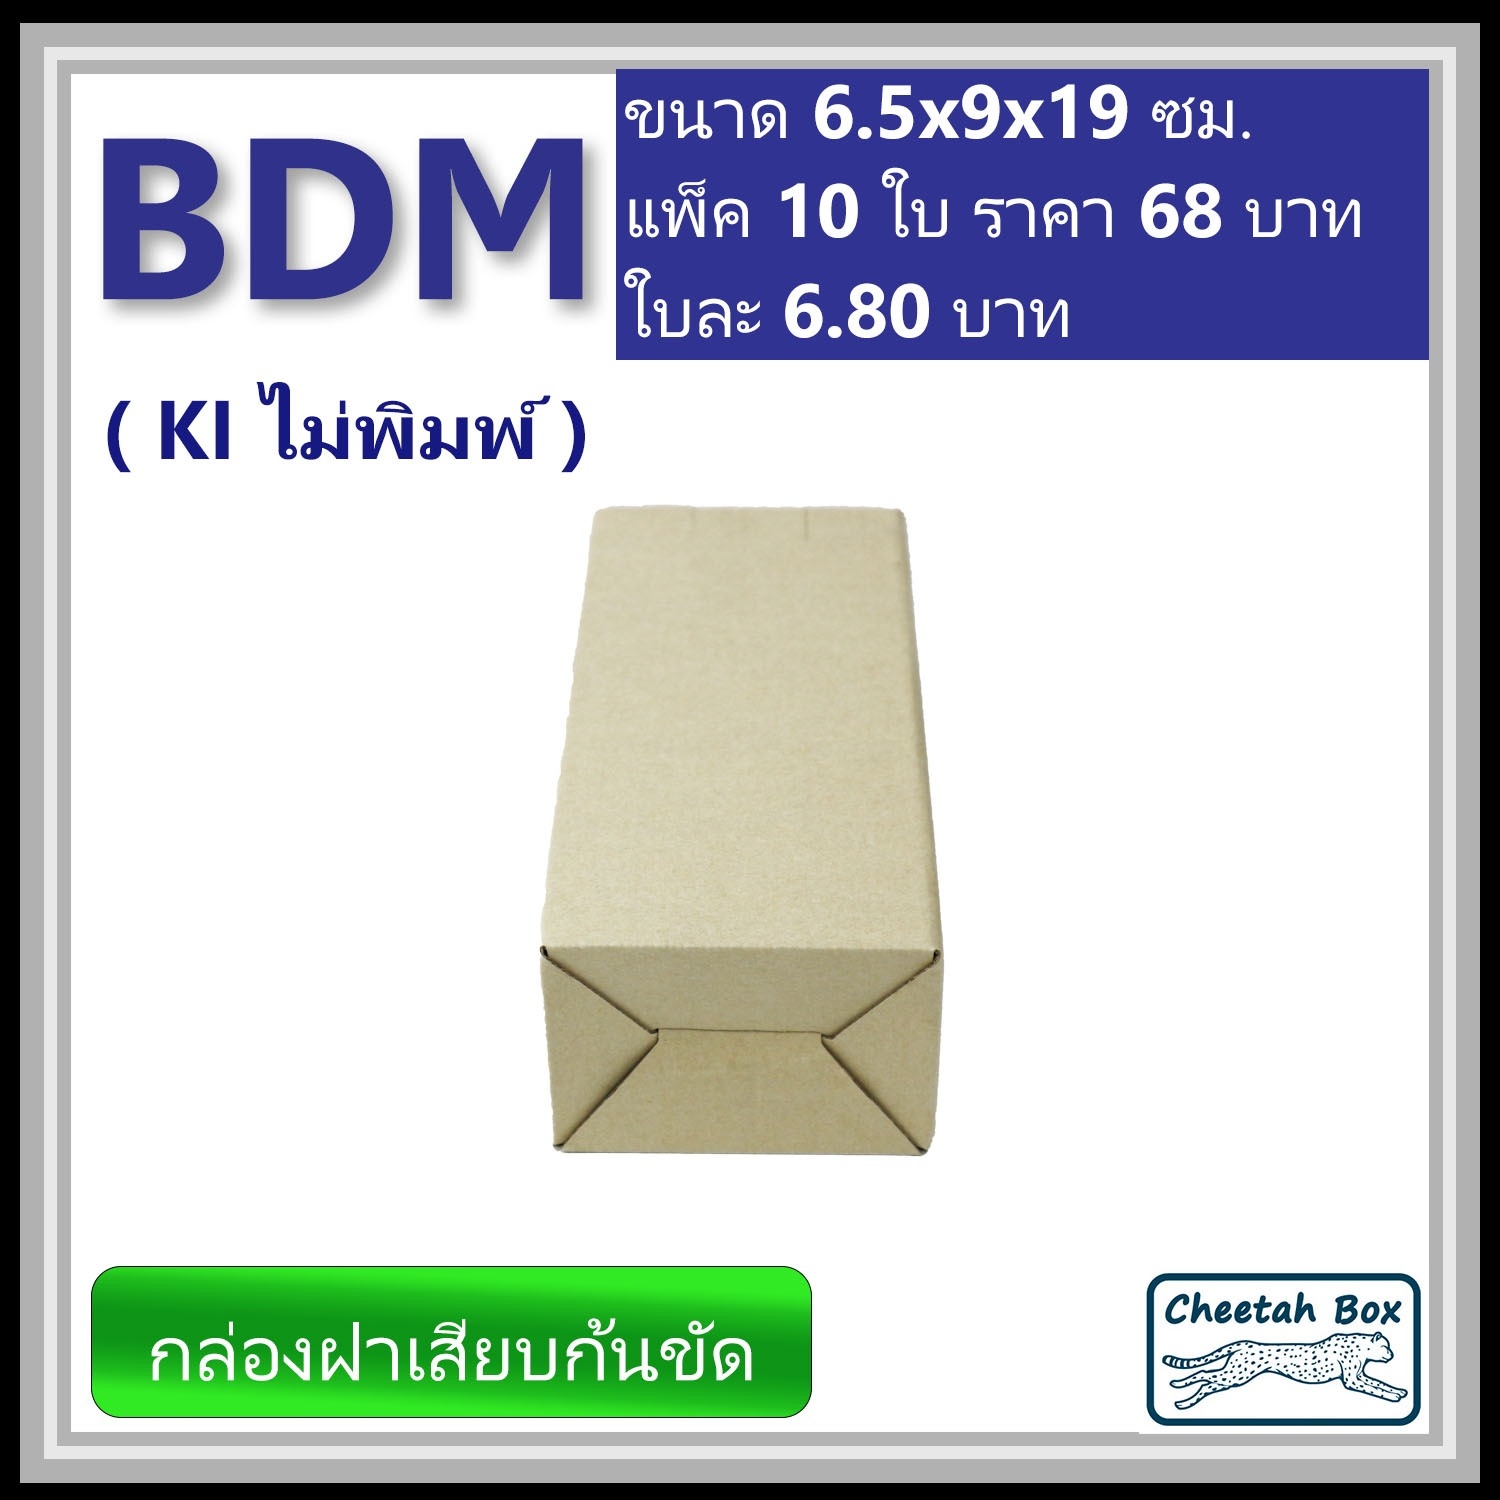 กล่องไดคัททรงสูง ฝาขัดก้นเสียบ BDM ไม่พิมพ์ (Die-cut Box) ขนาด 6.5W x 9L x 19H cm.